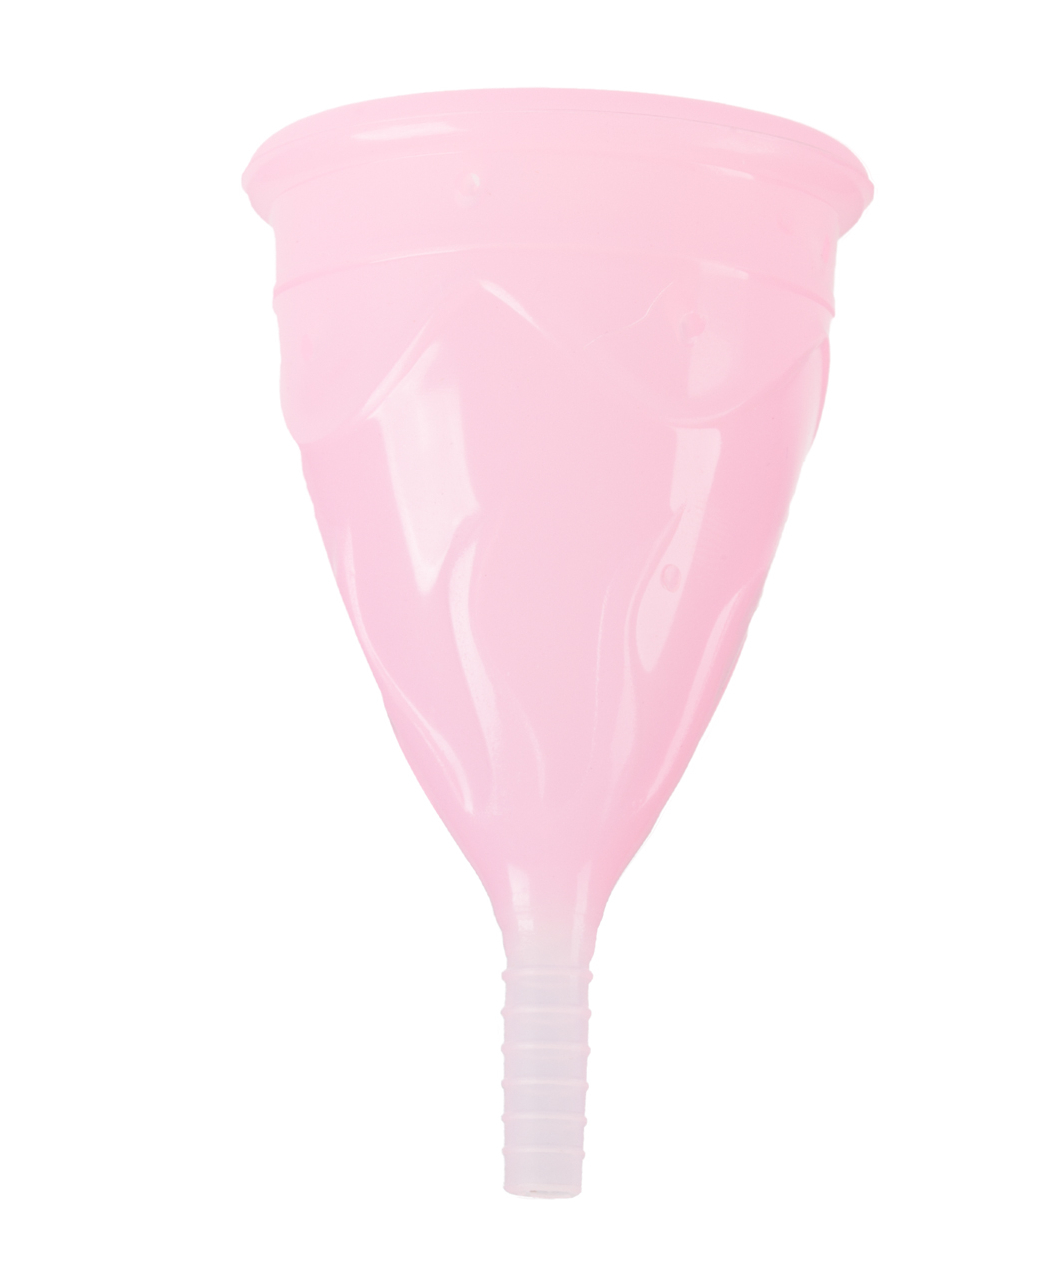 Femintimate Eve menstrual cup